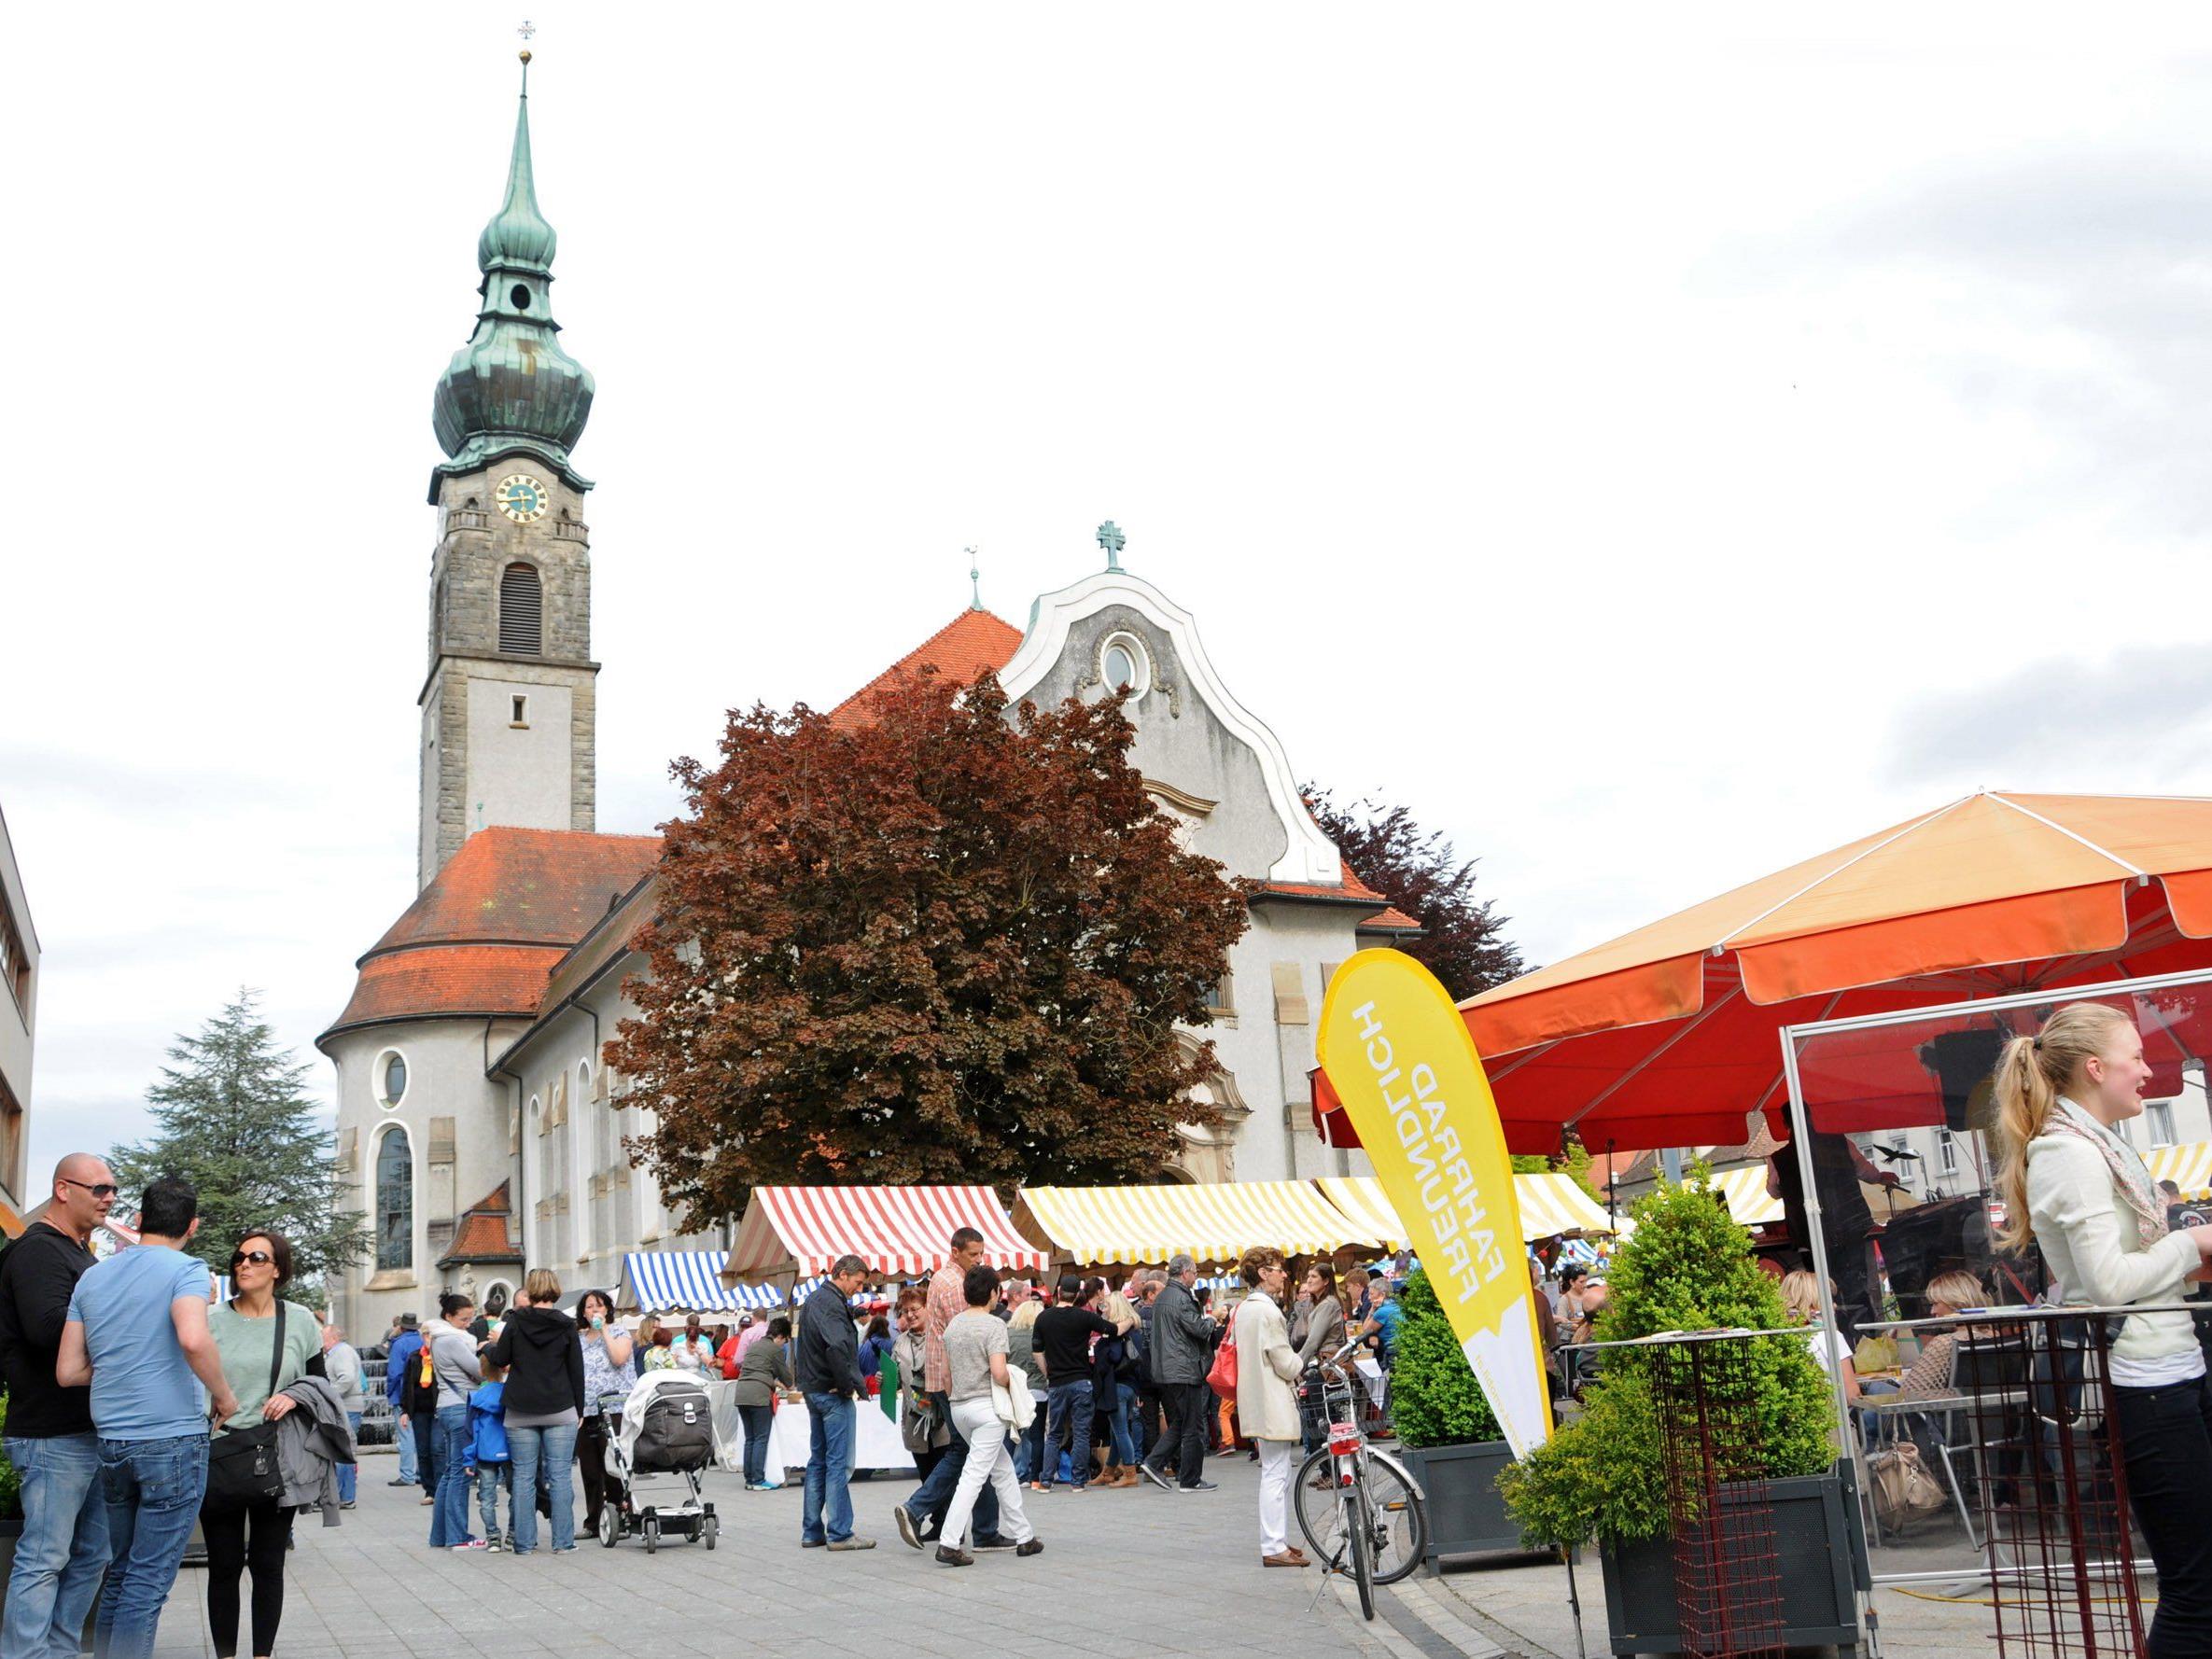 Am Samstag, dem 9. Mai, beginnt um 16 Uhr der Abendmarkt auf der Höchster Kirchplatz